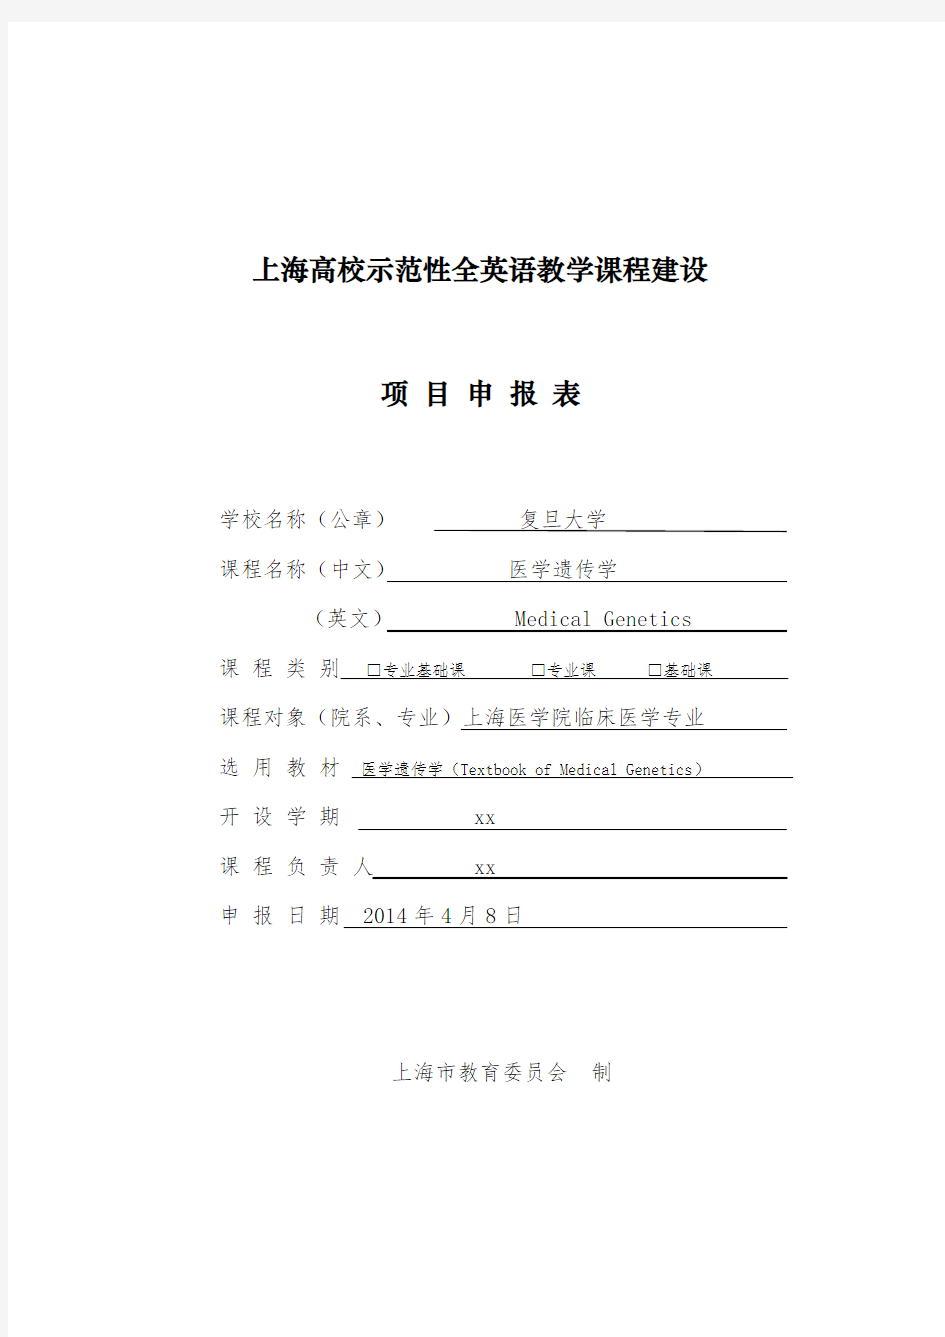 上海高校示范性全英语教学课程建设项目申报表.doc